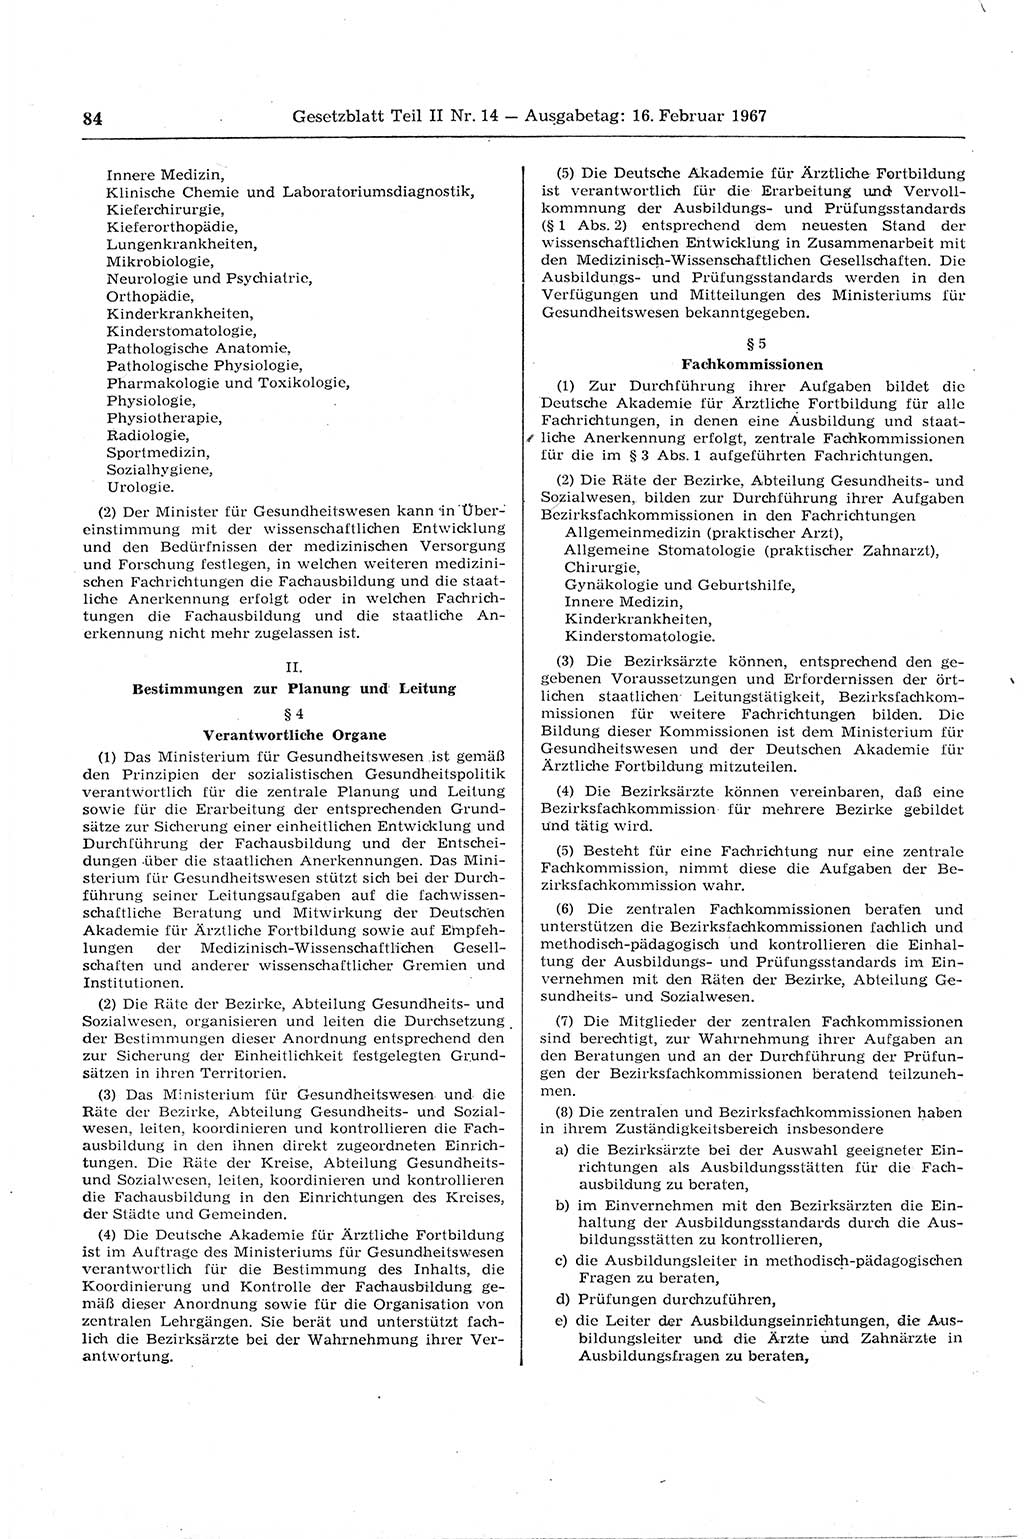 Gesetzblatt (GBl.) der Deutschen Demokratischen Republik (DDR) Teil ⅠⅠ 1967, Seite 84 (GBl. DDR ⅠⅠ 1967, S. 84)